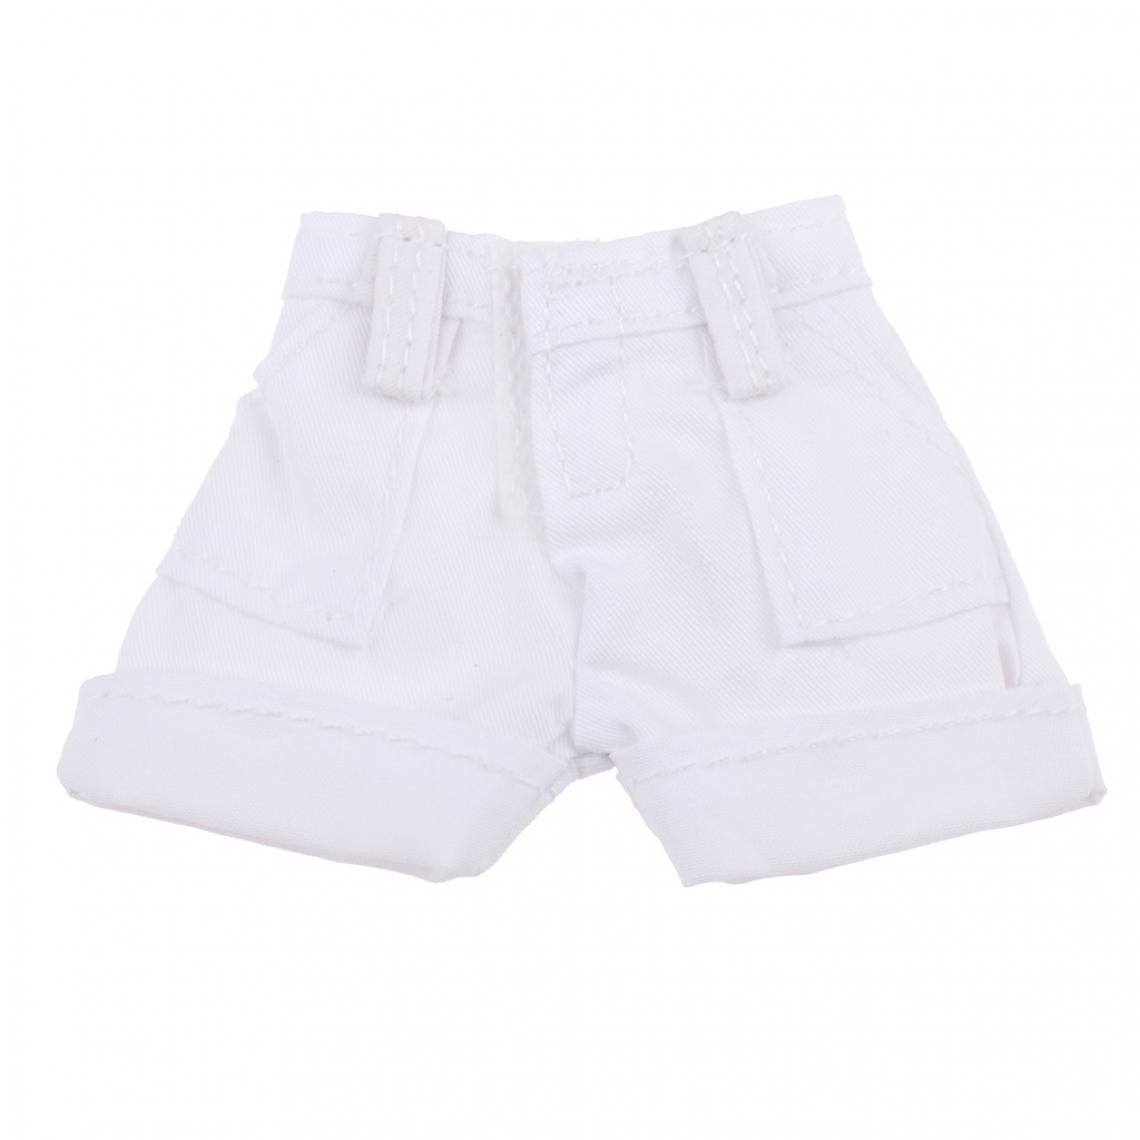 marque generique - Pantalon Shorts 1/6 Accessoires pour Blythe Azone Licca Doll noir - Poupons